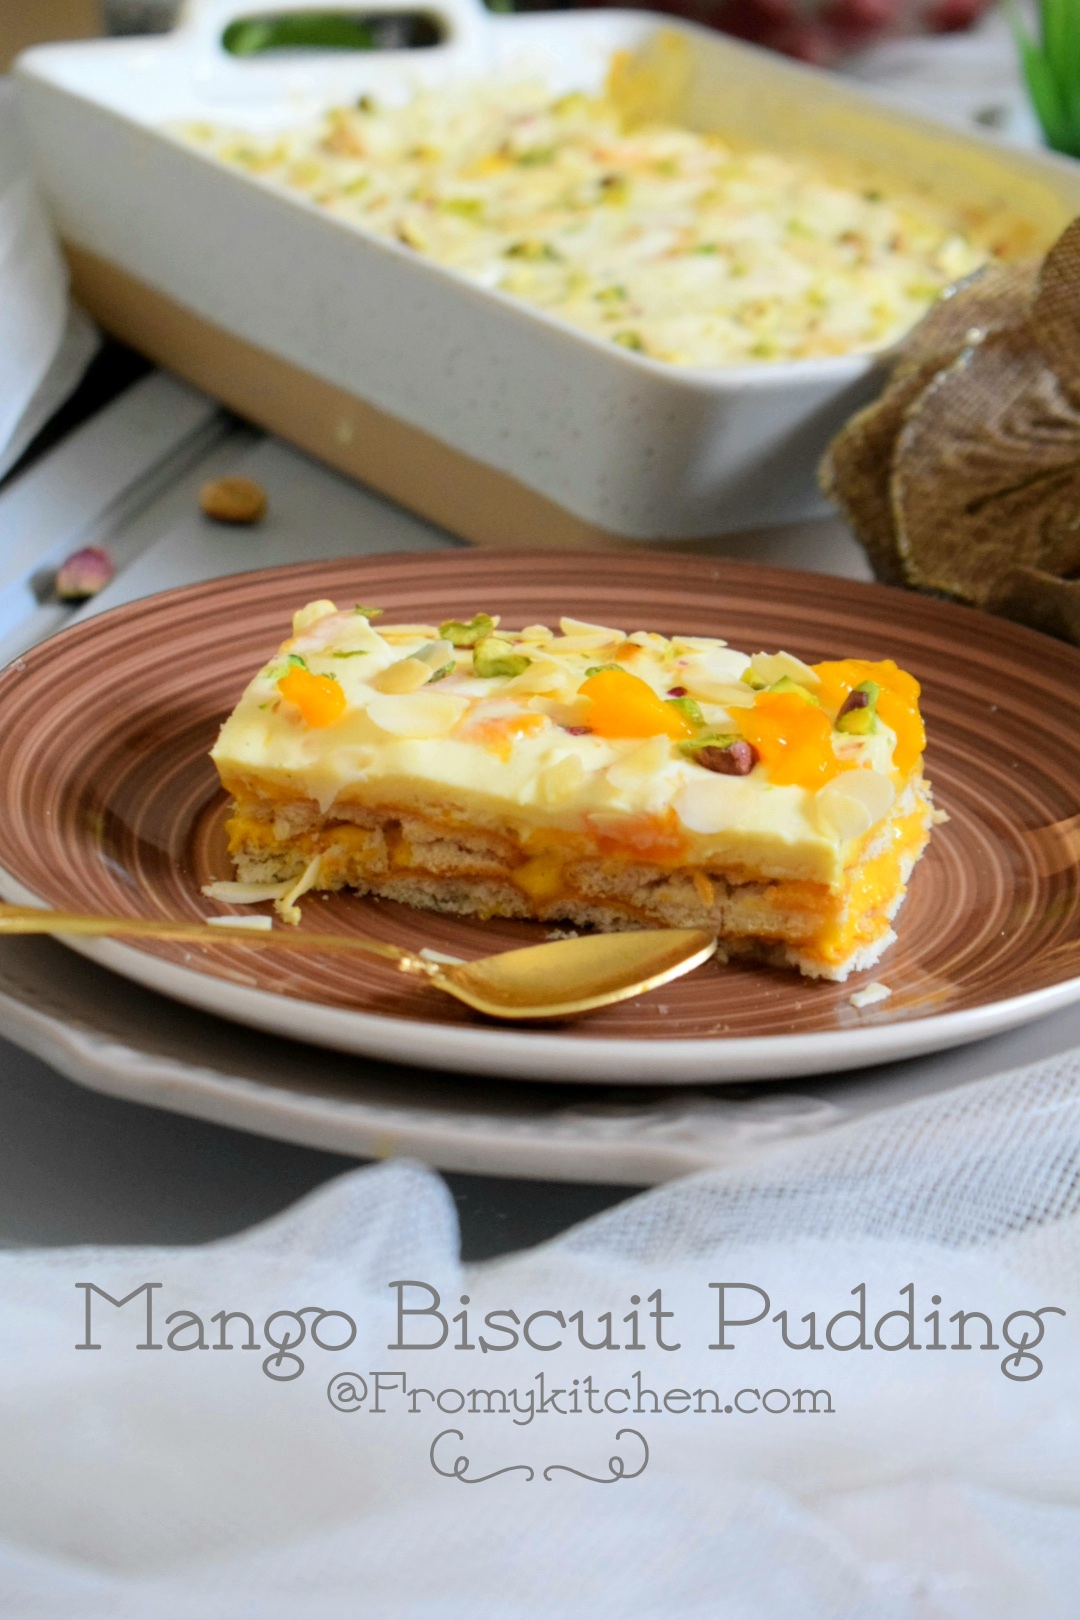 Mango Biscuit pudding